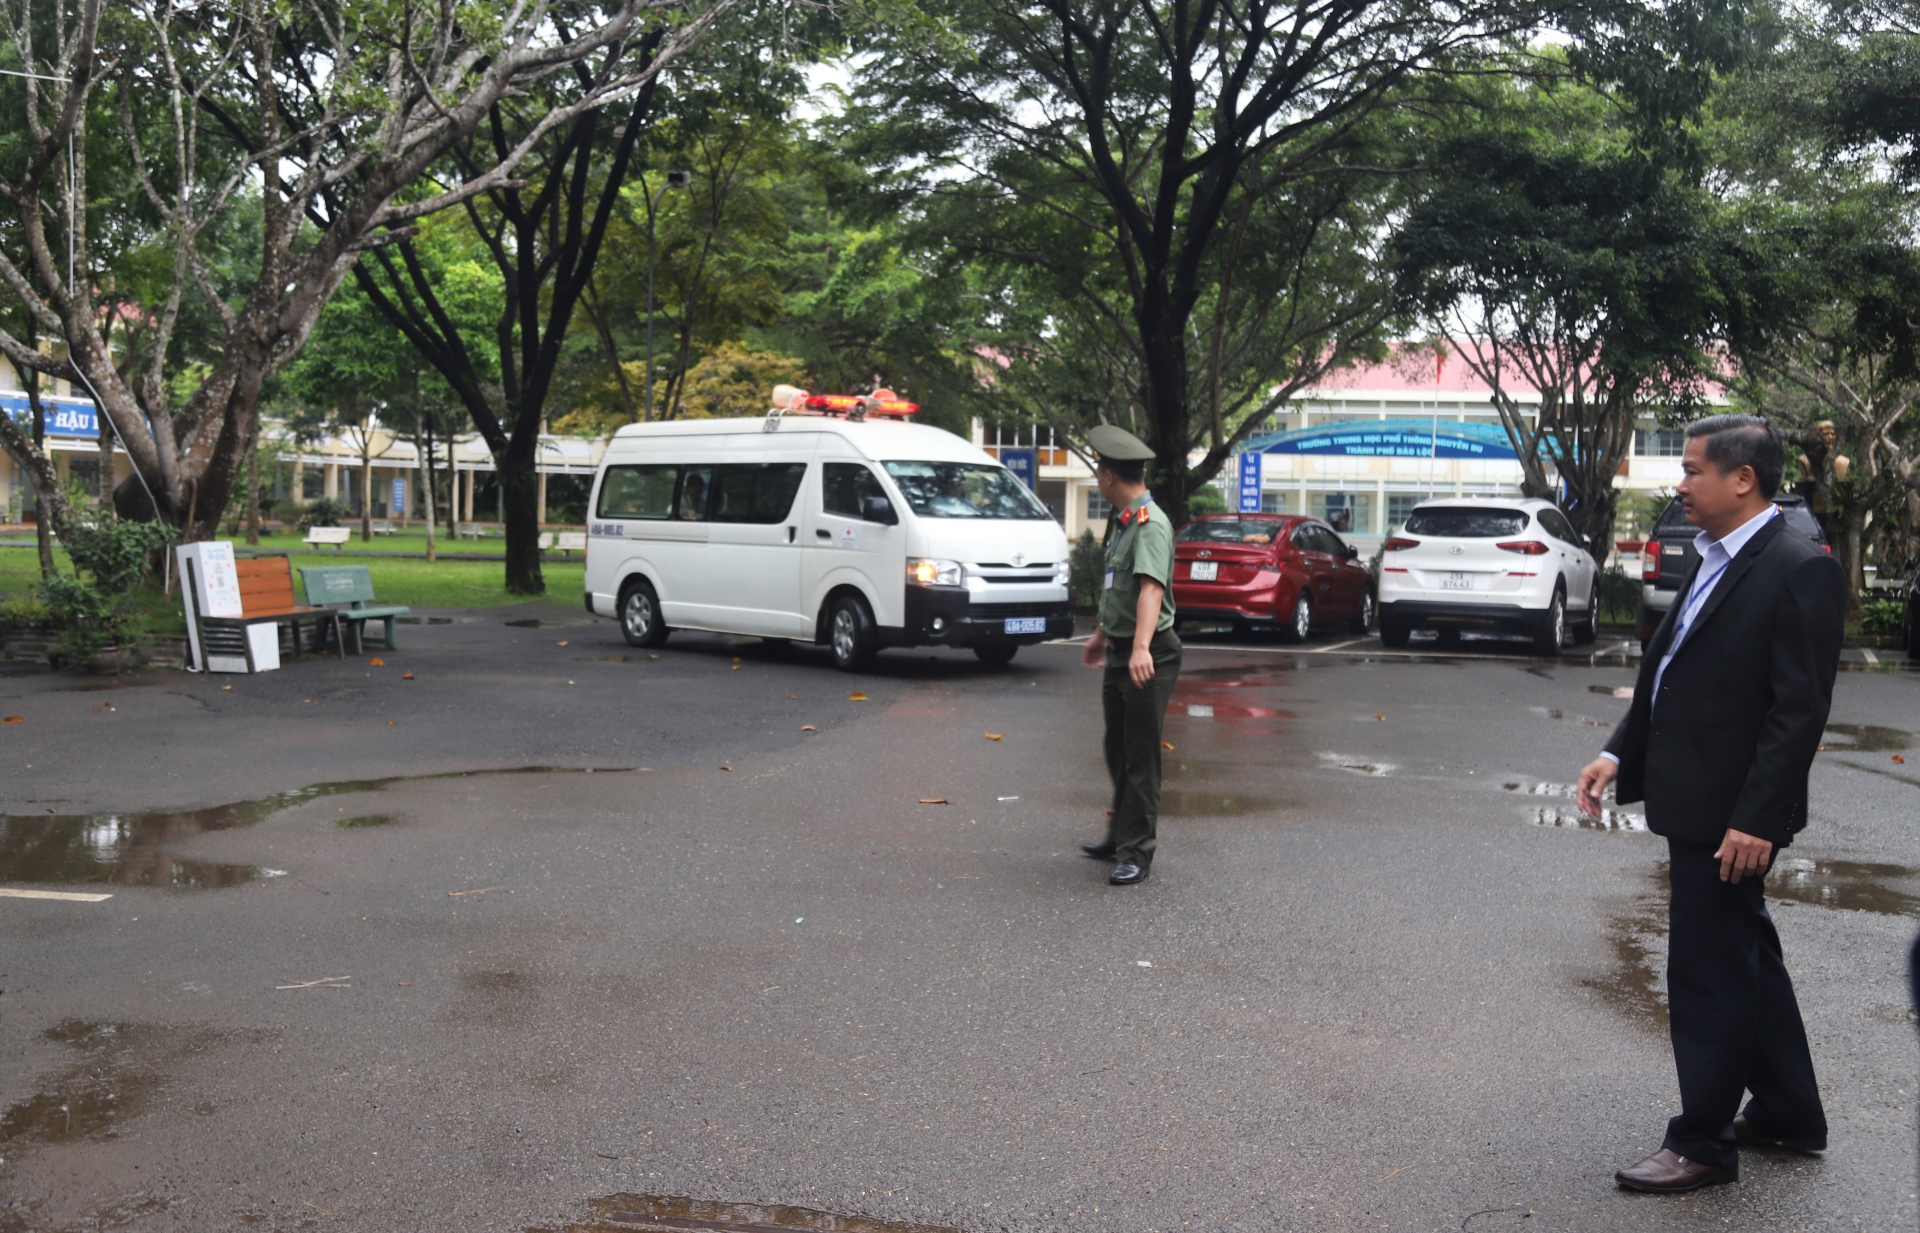 UBND TP Bảo Lộc điều xe cấp cứu tới điểm thi trường THPT Nguyễn Du đón 2 thí sinh bị tai nạn tới bệnh viện cấp cứu điều trị ngay sau khi kết thúc thi môn Toán